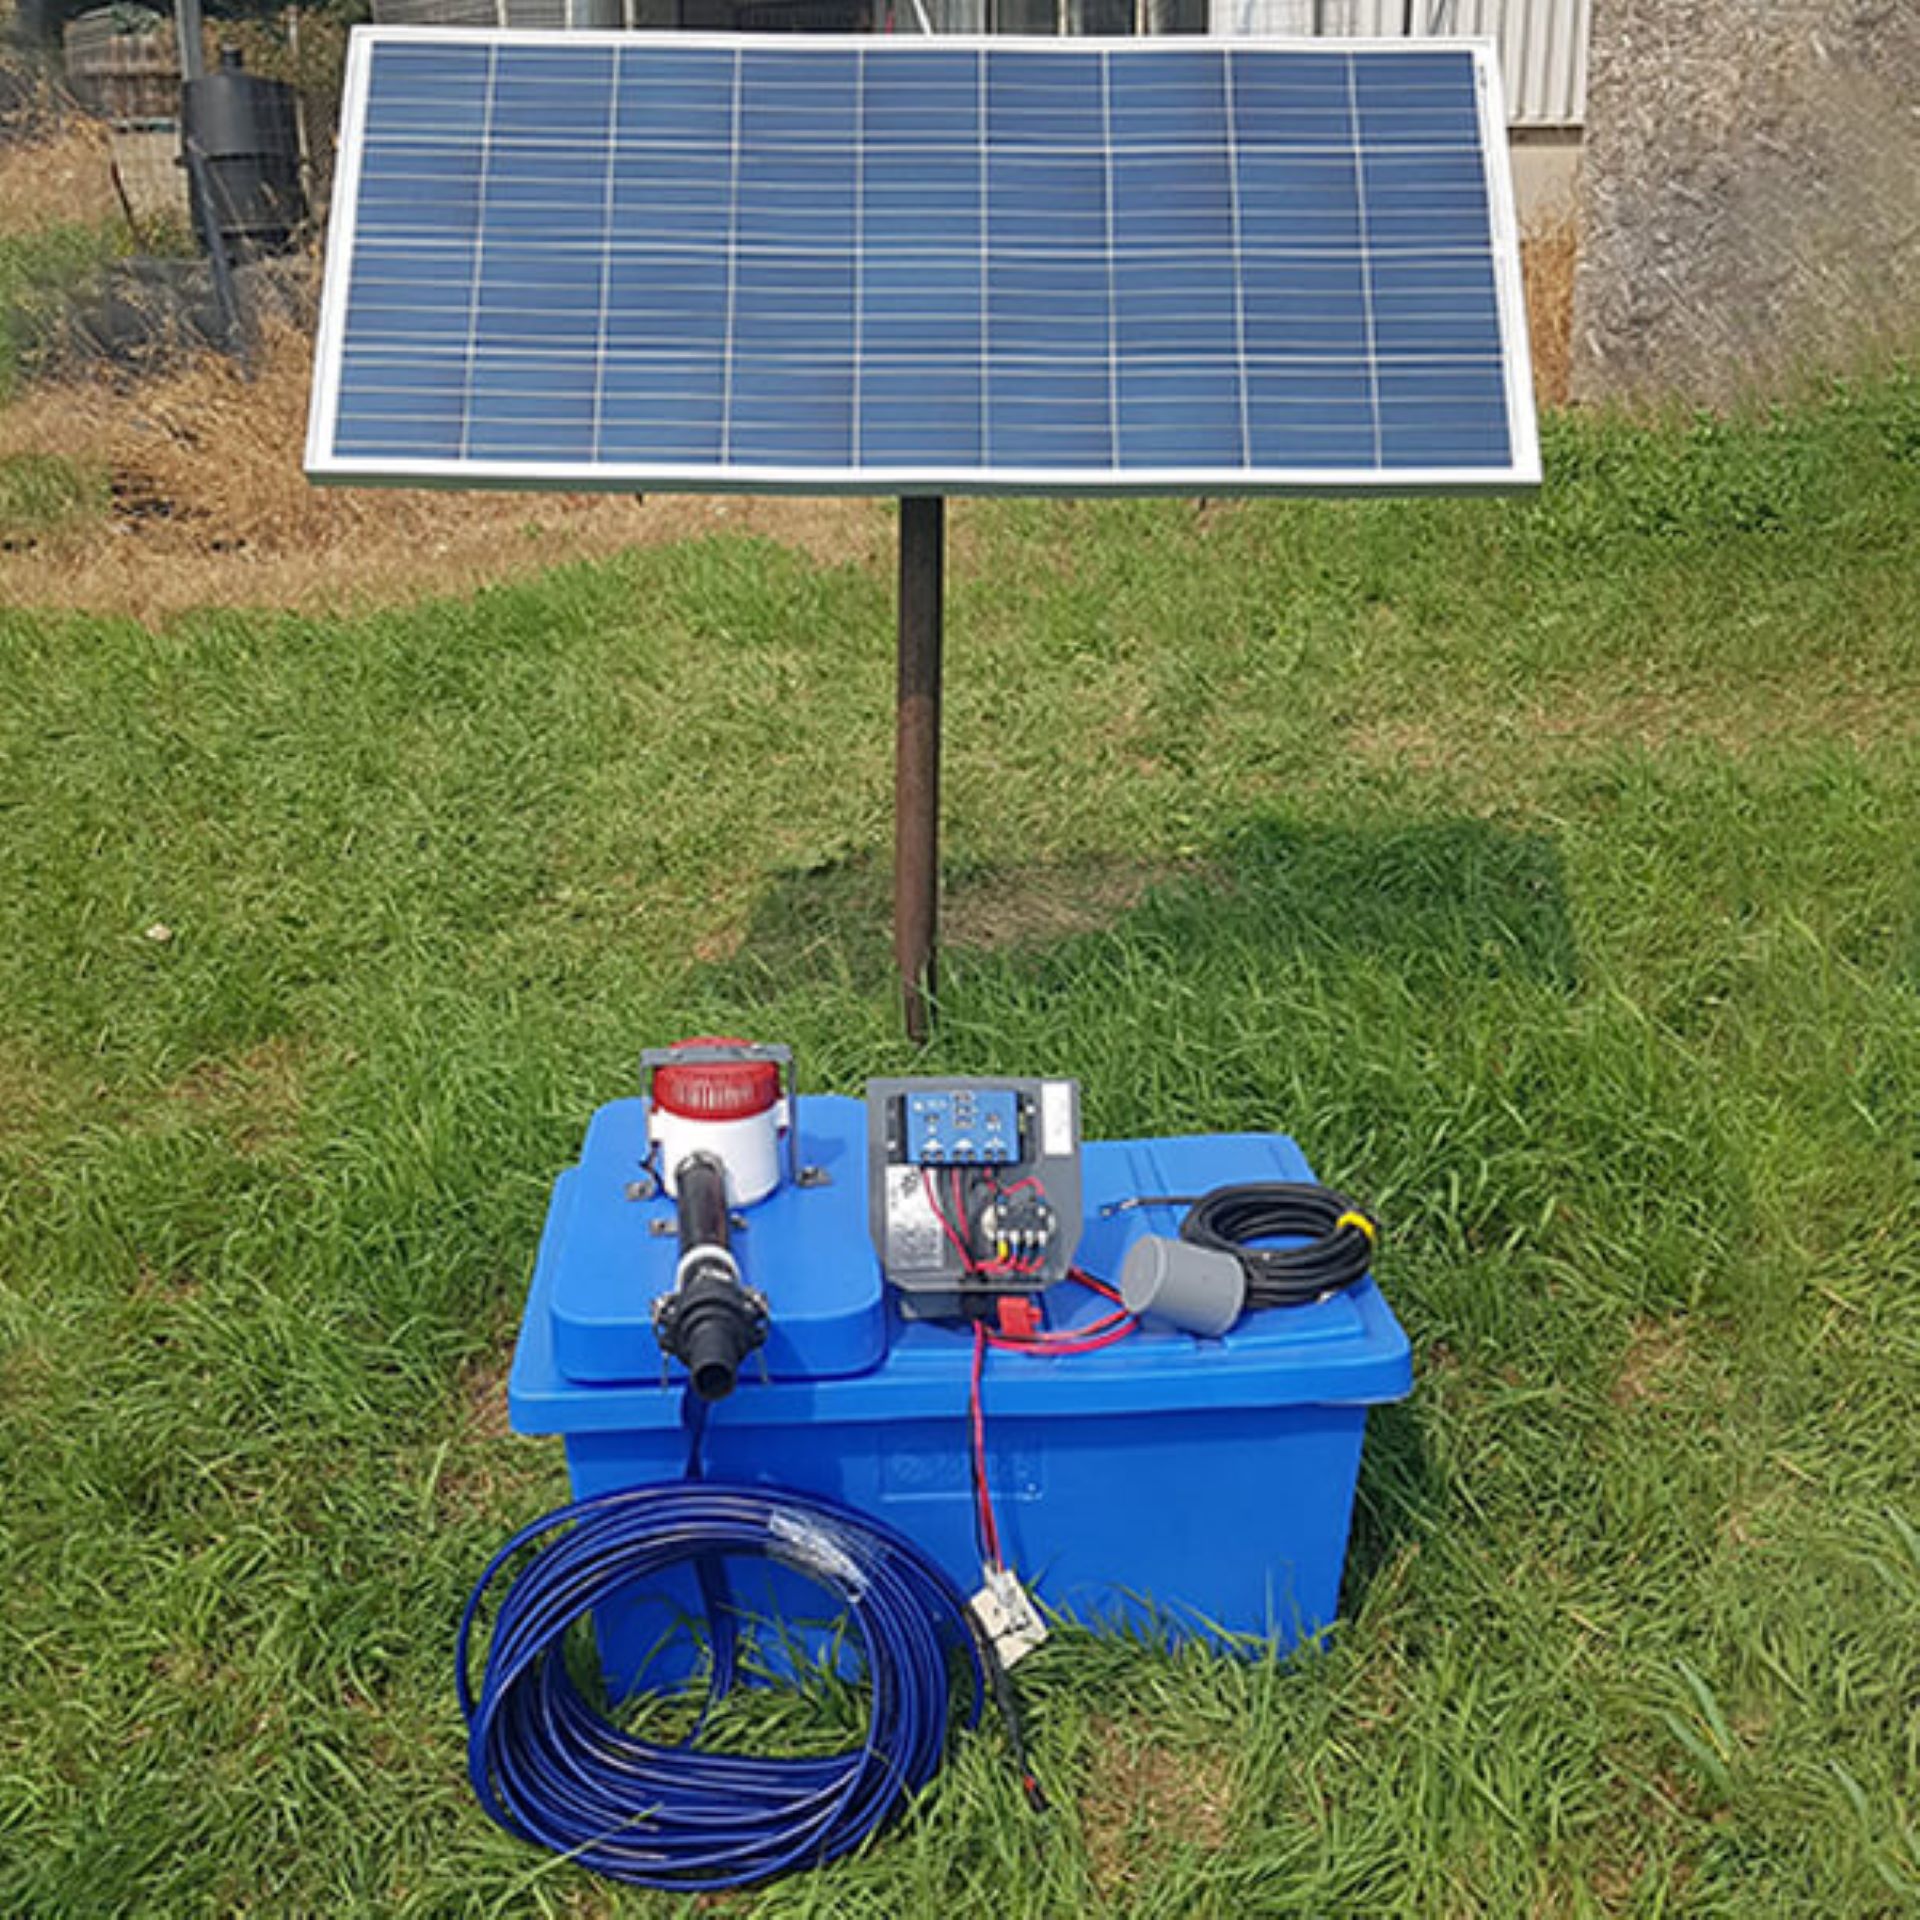 K2 Float Pump System 24V 2-160 Solar Panels